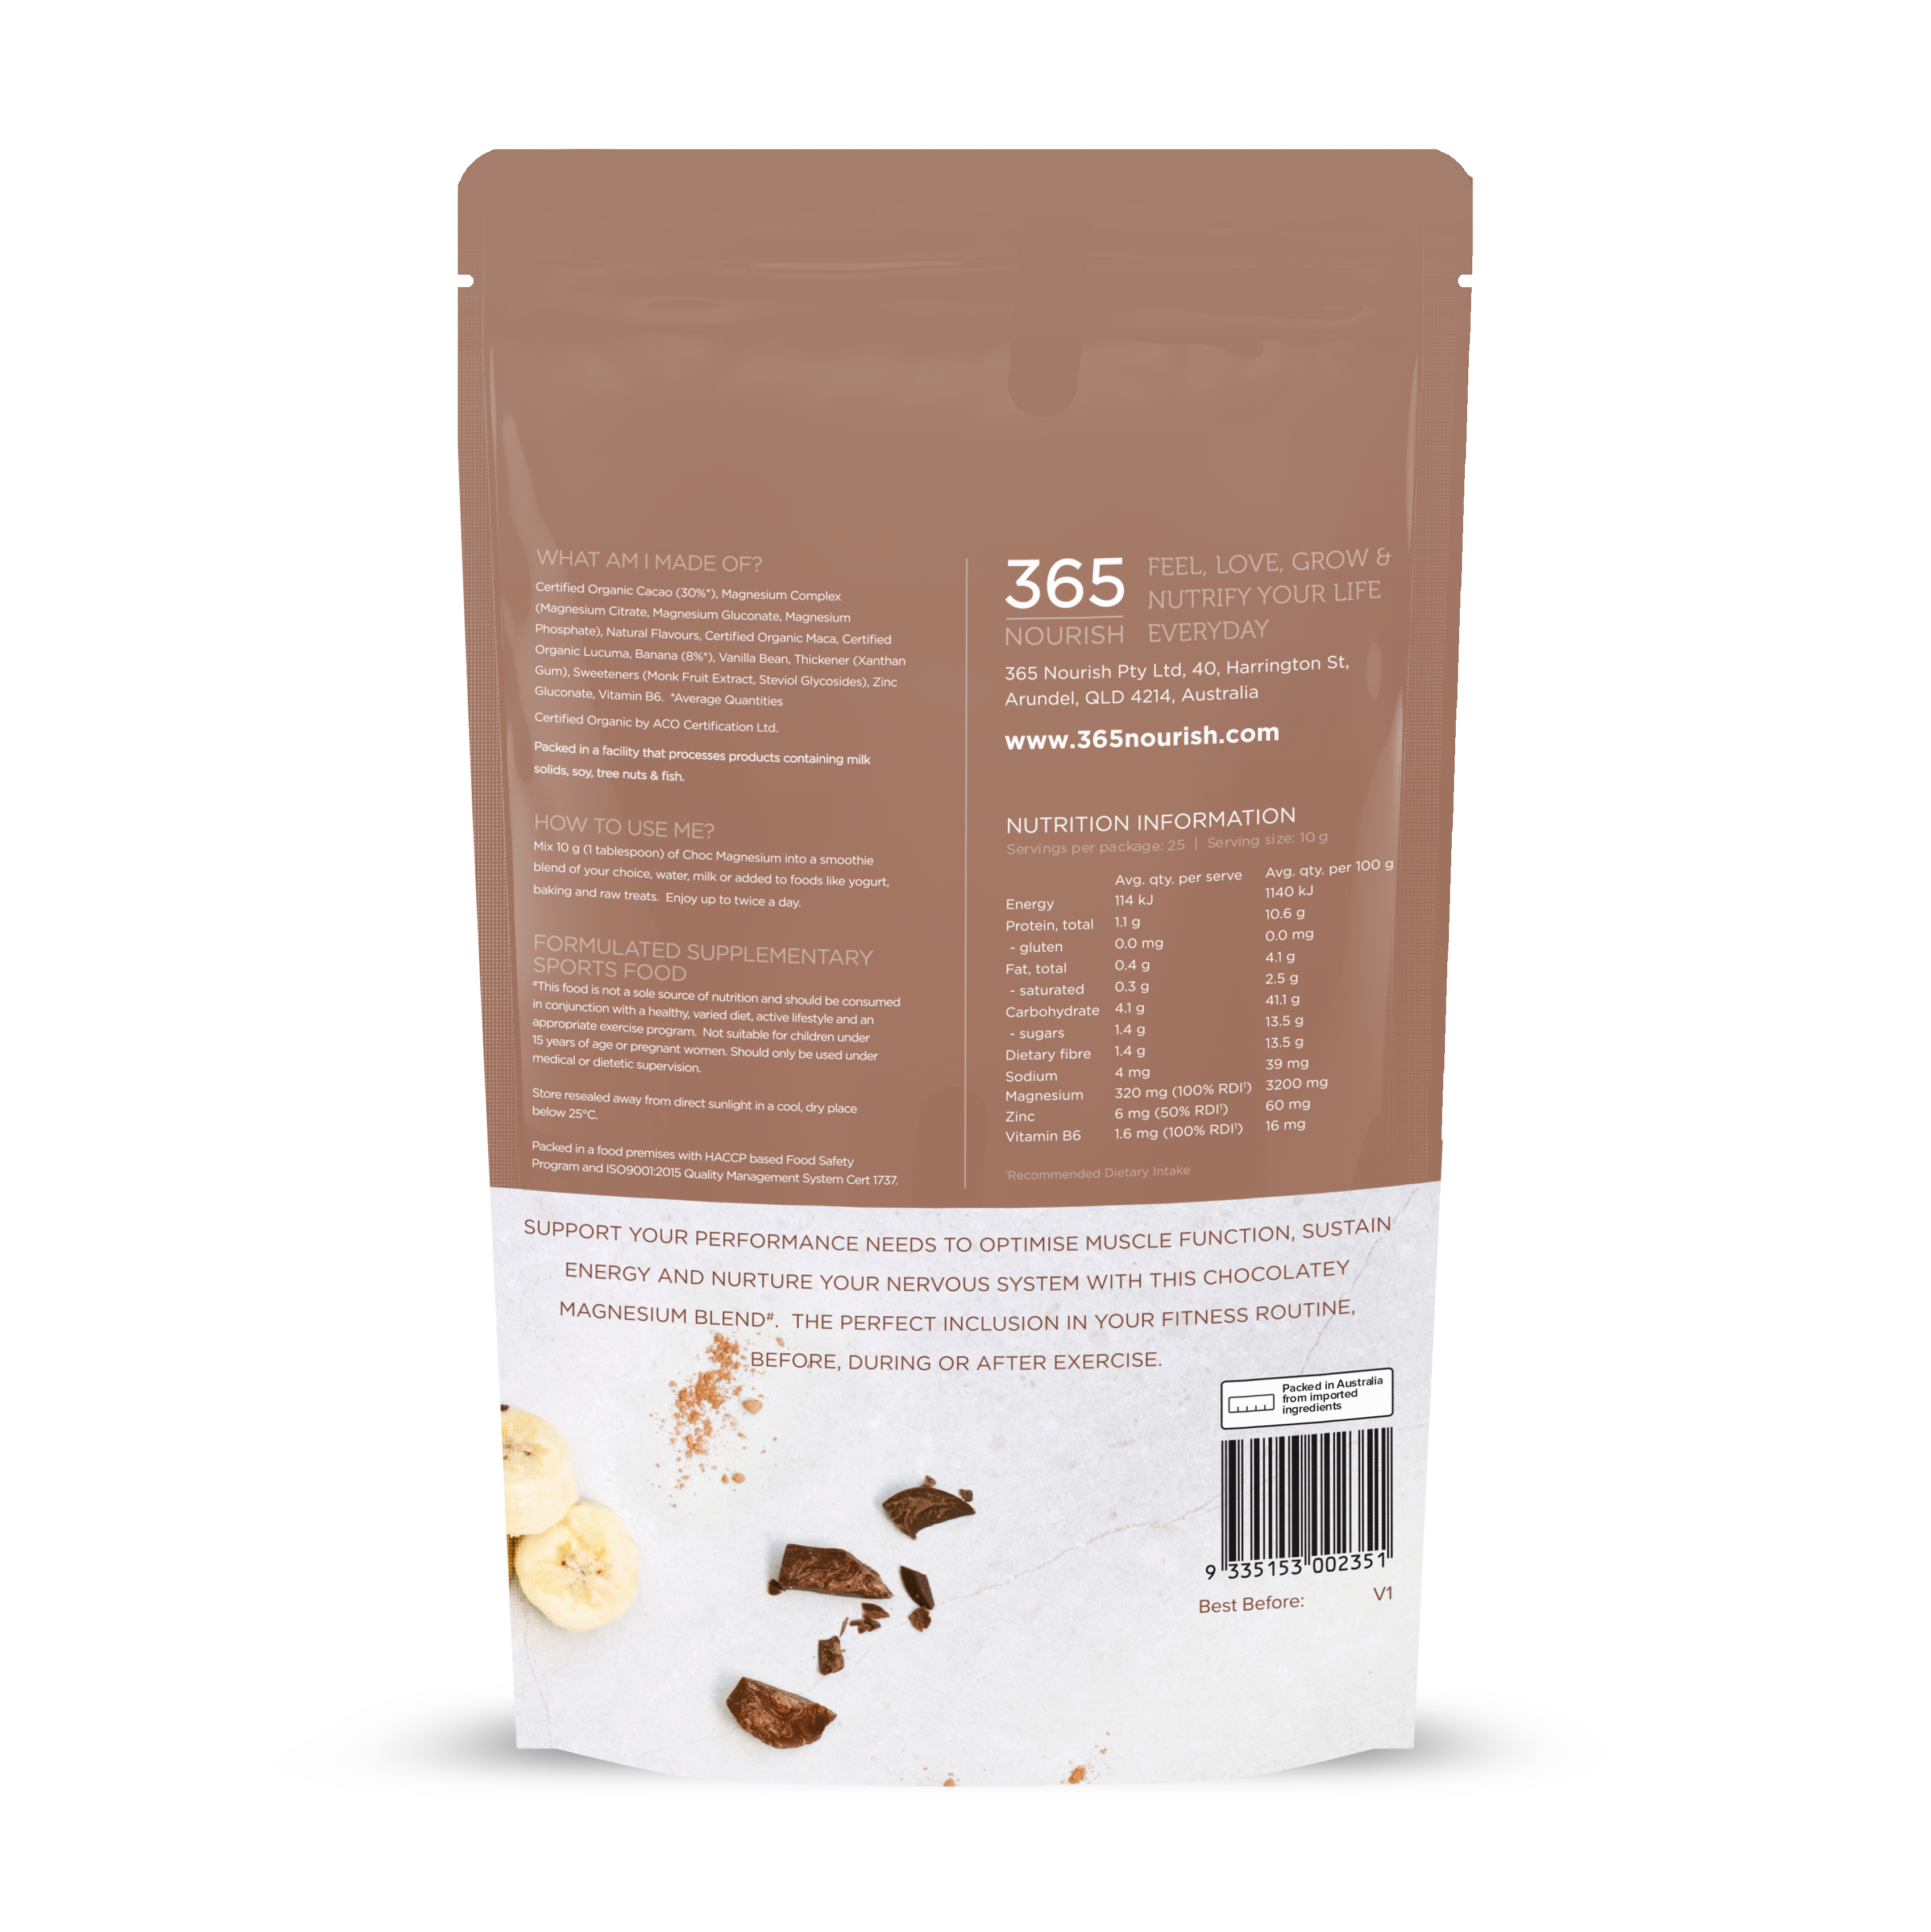 Chocolate Magnesium Complex Powder - 365 Nourish